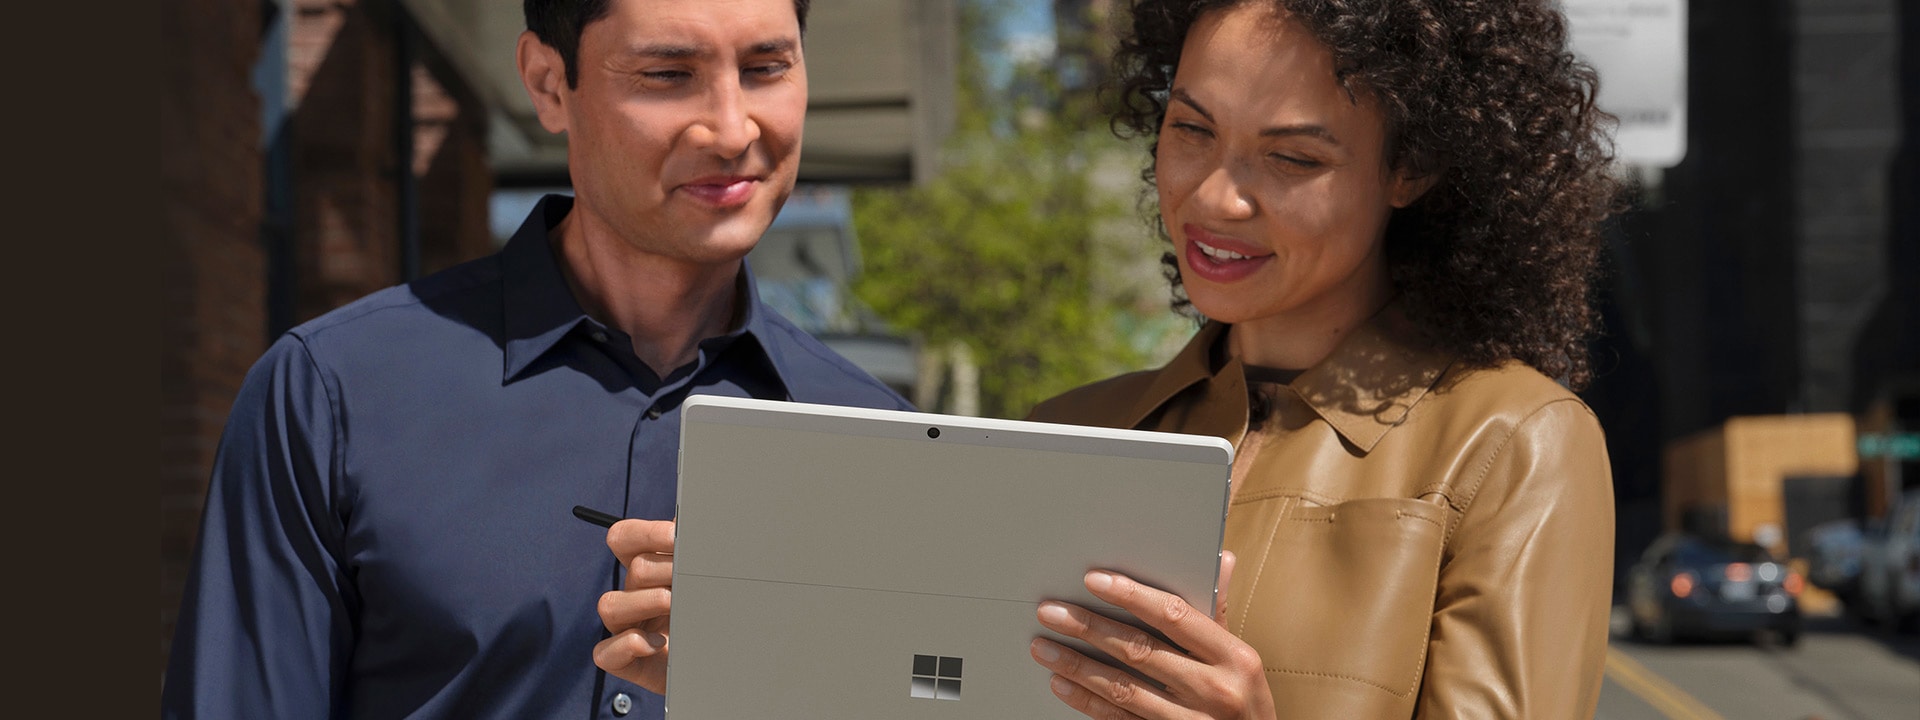 Kaksi ihmistä seisoo suurkaupungin jalkakäytävällä katsellen tablettitilassa olevan Surface Pro X:n näyttöä